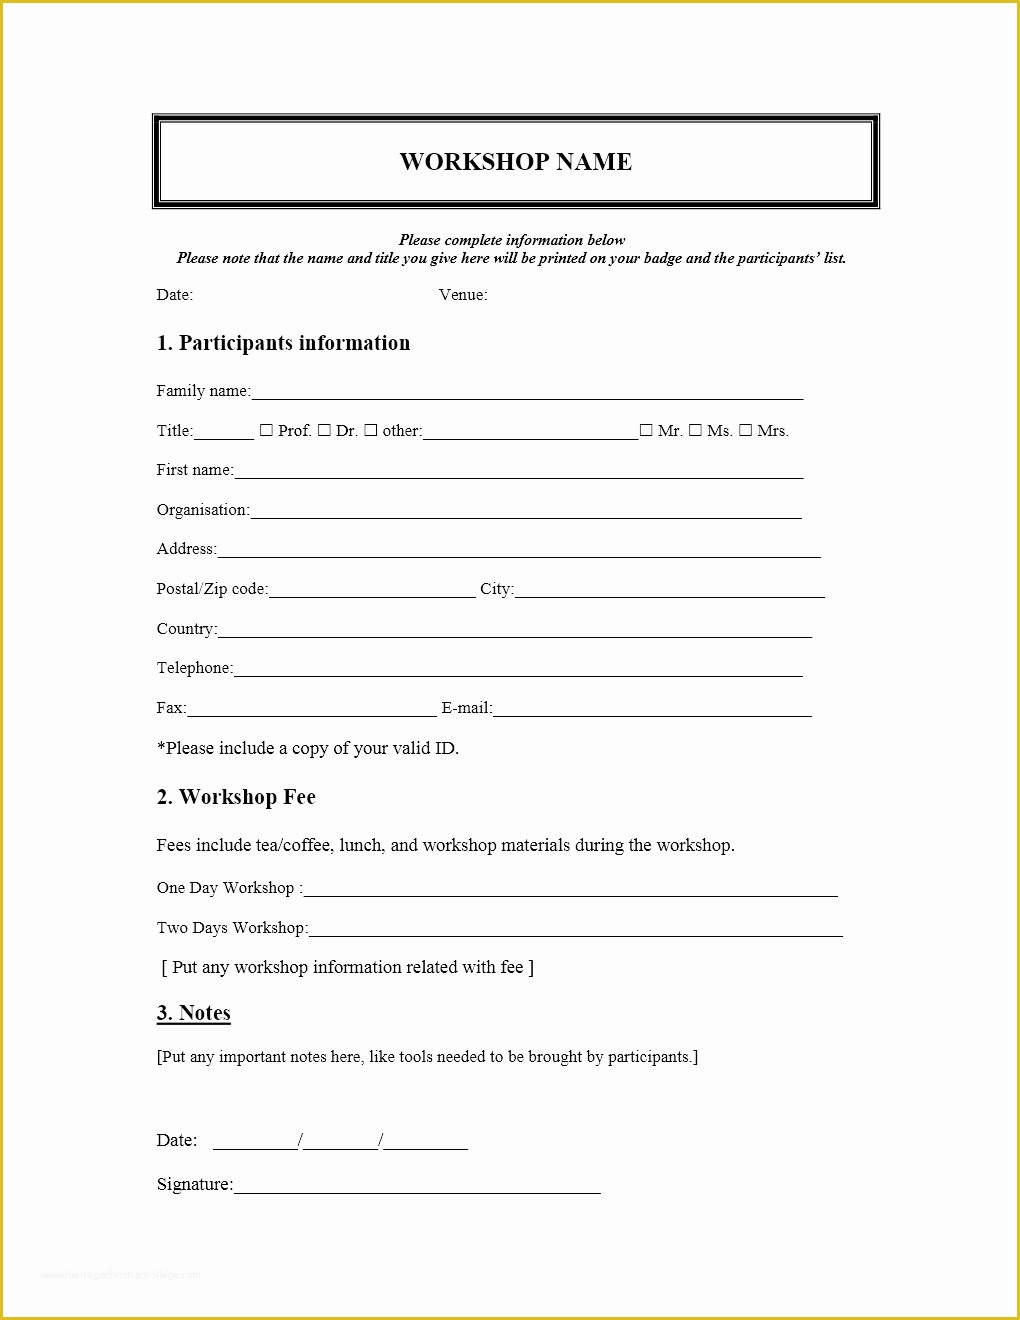 Class Registration form Template Free Of Workshop Registration form